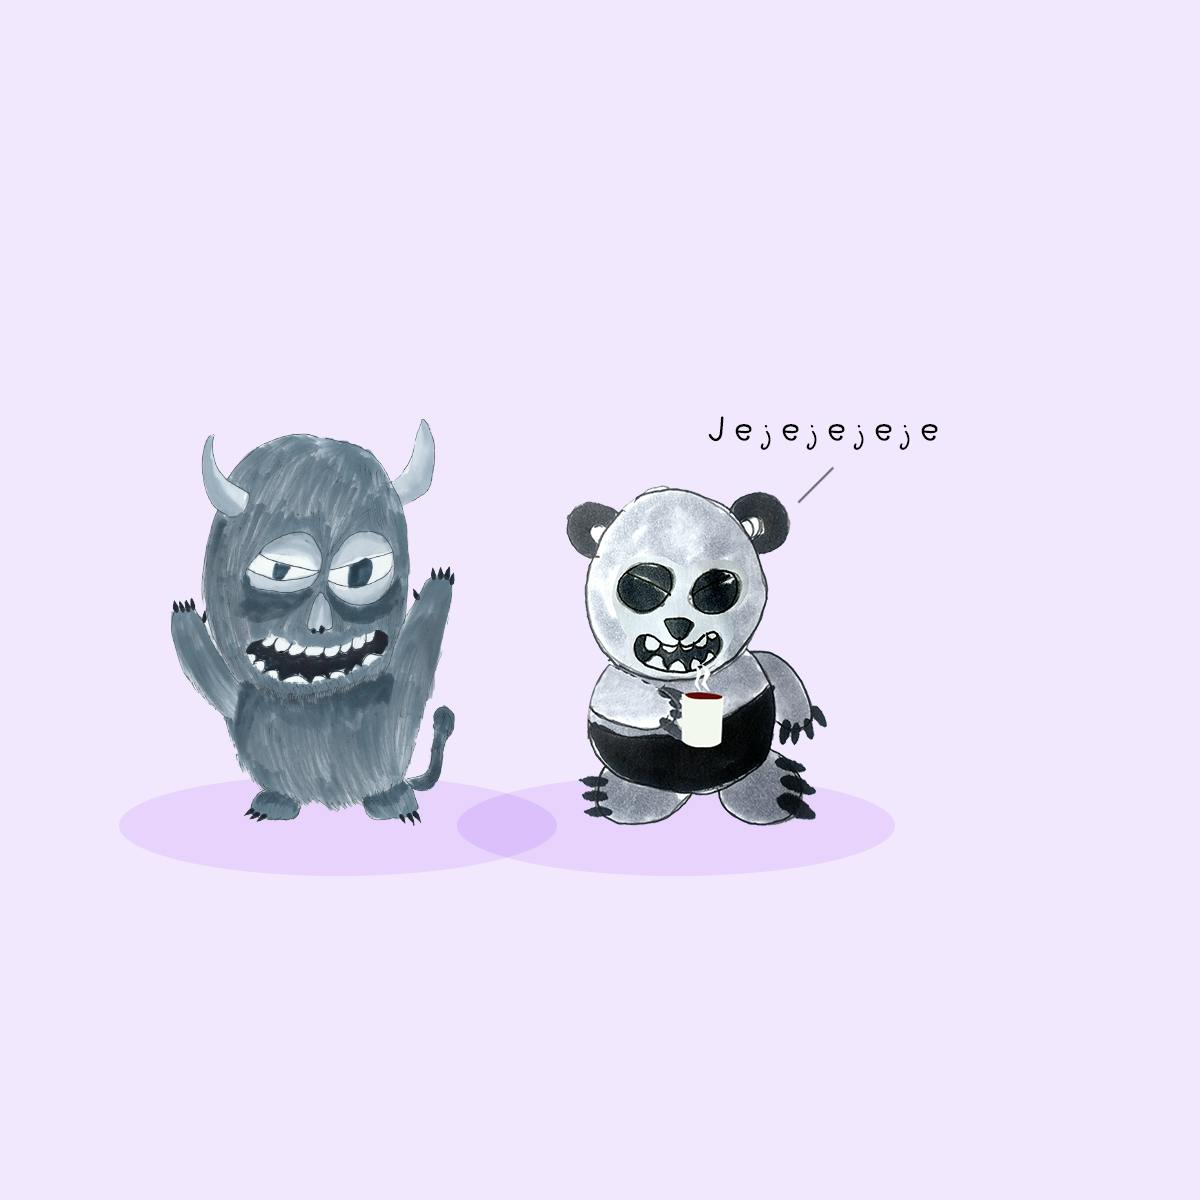 Garitma, Monstruo hablando mientras oso panda toma café, cómic dibujo marcador sobre papel